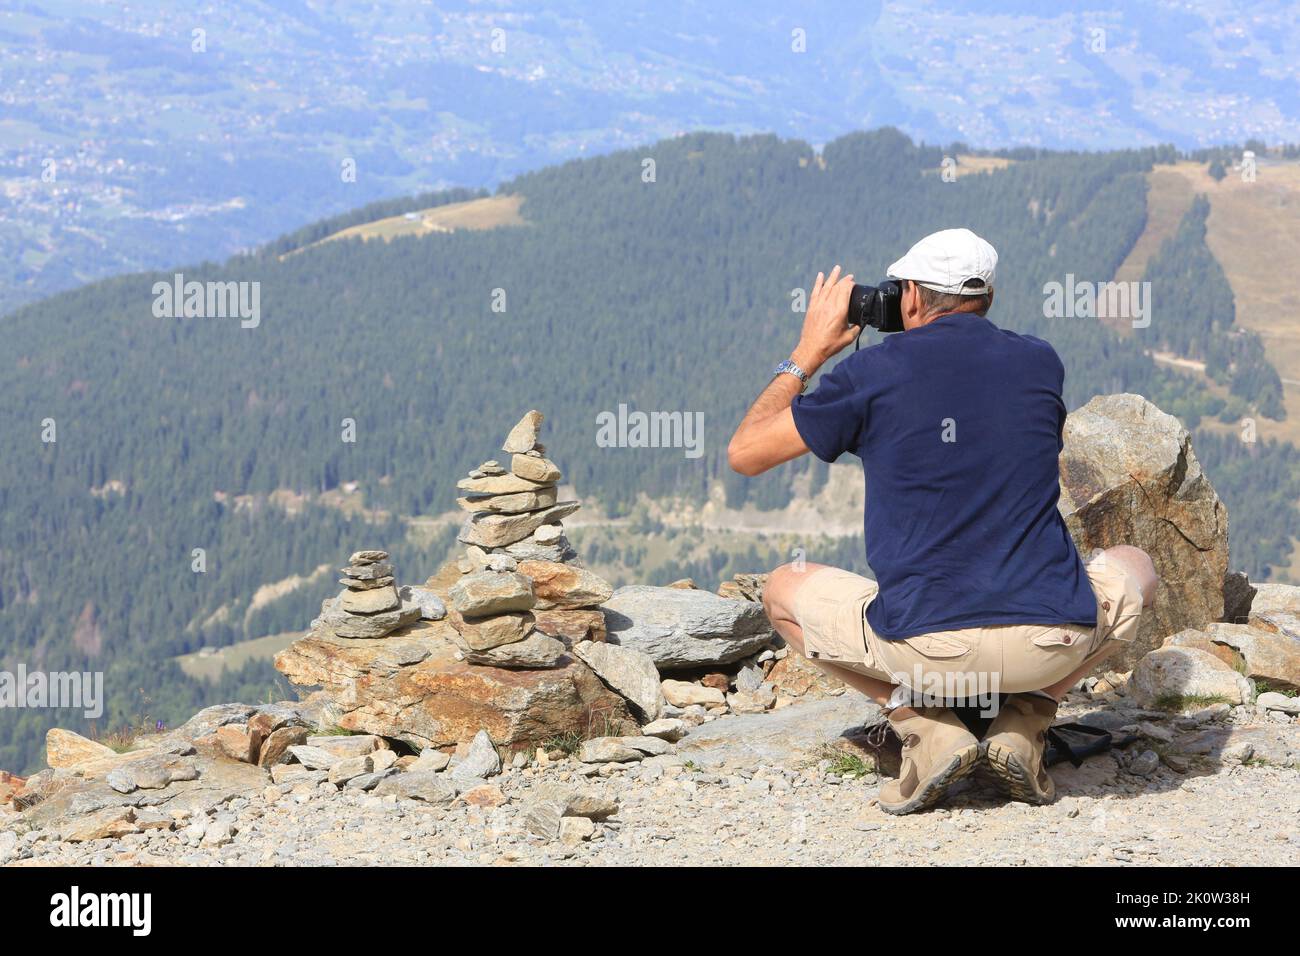 Touriste à proximité d'un cairn, amas de pierres placé pour marquer un lieu particulier, photographiant le paysage. NID d’Aigle. Saint-Gervais-les-Bai Stockfoto